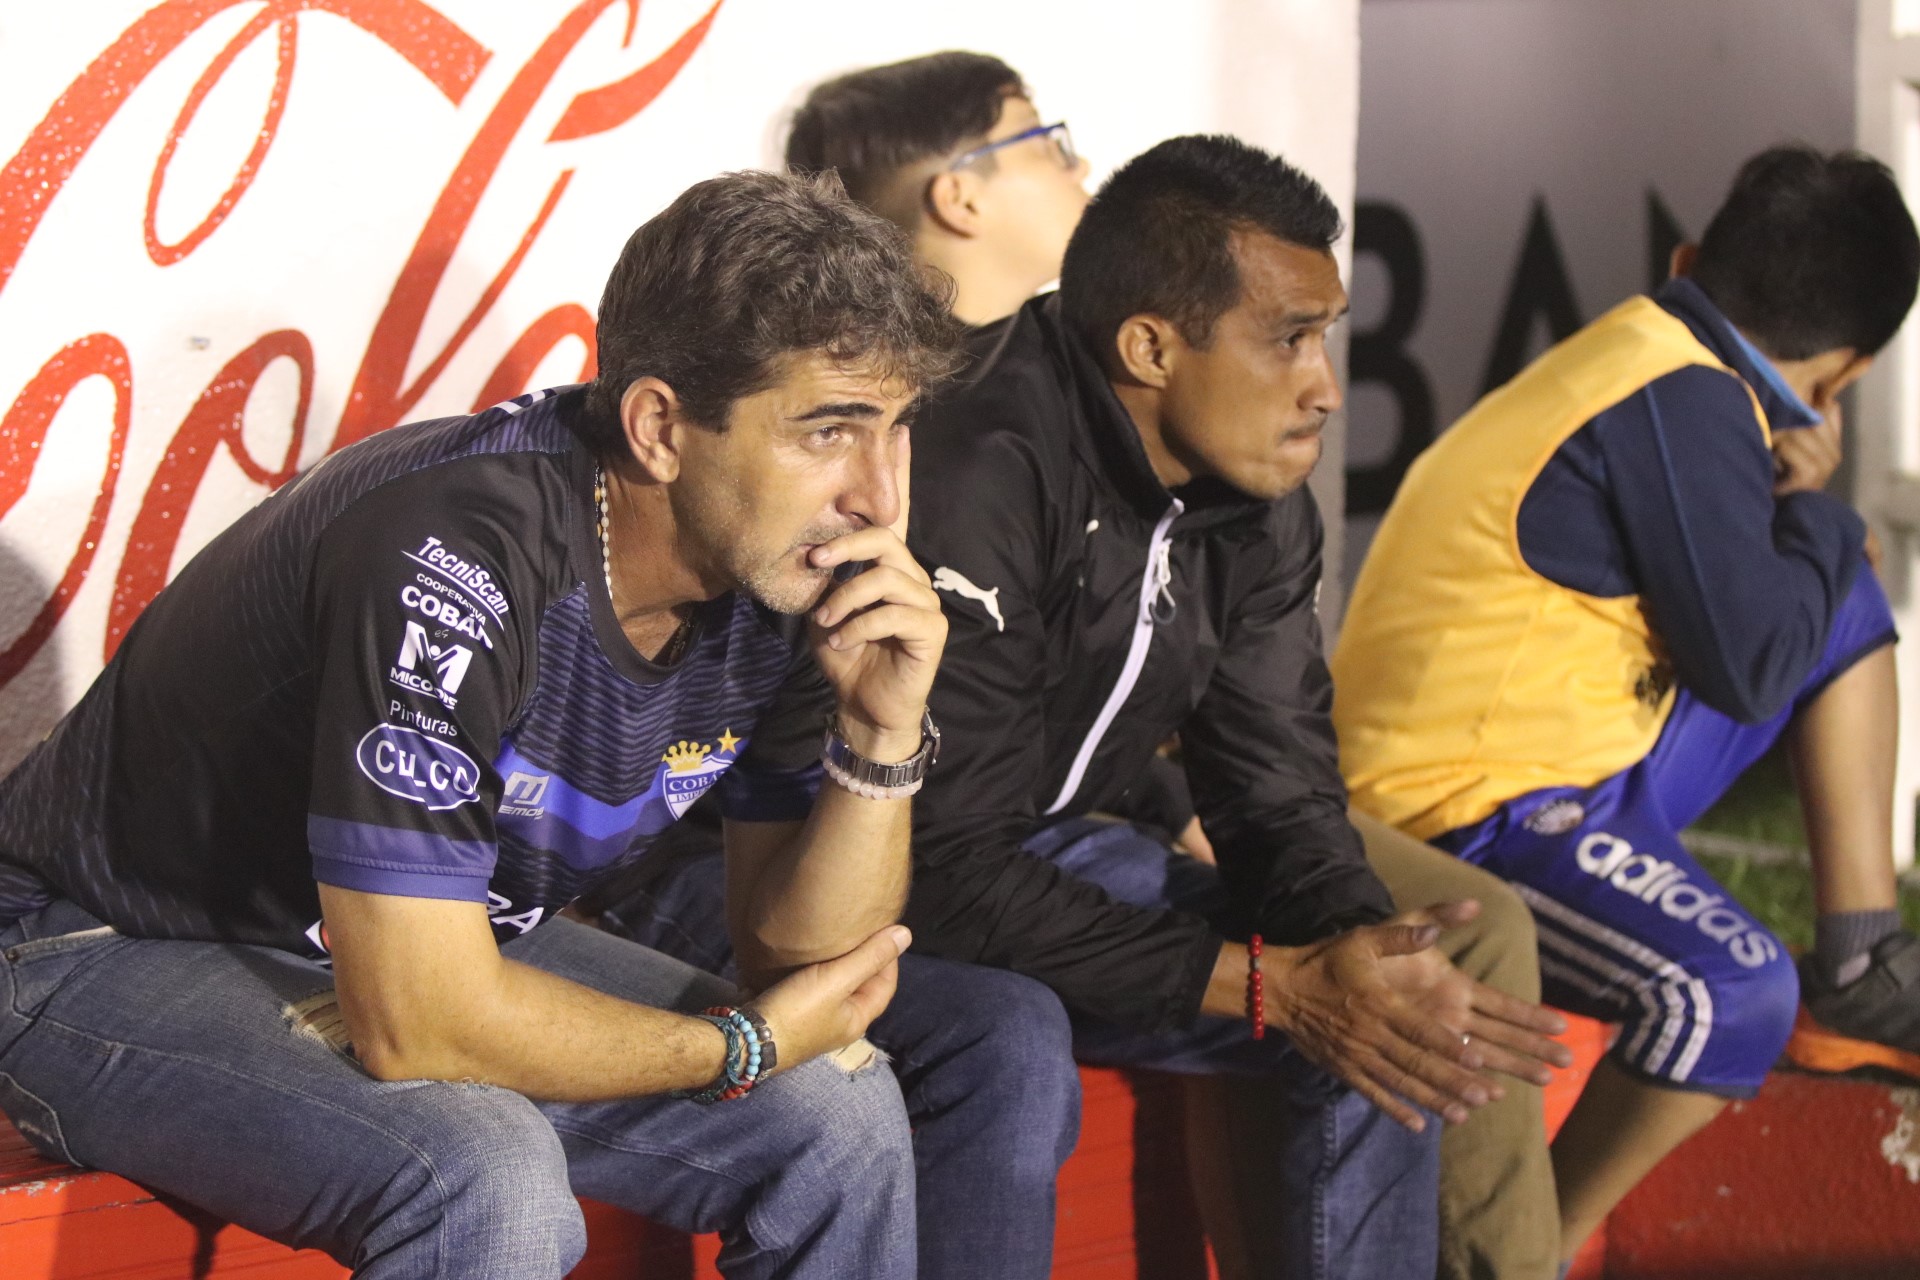 El entrenador Fabricio Benítez luce desconsolado tras la eliminación de su equipo Cobán Imperial. (Foto Prensa Libre: Eduardo Sam Chun)